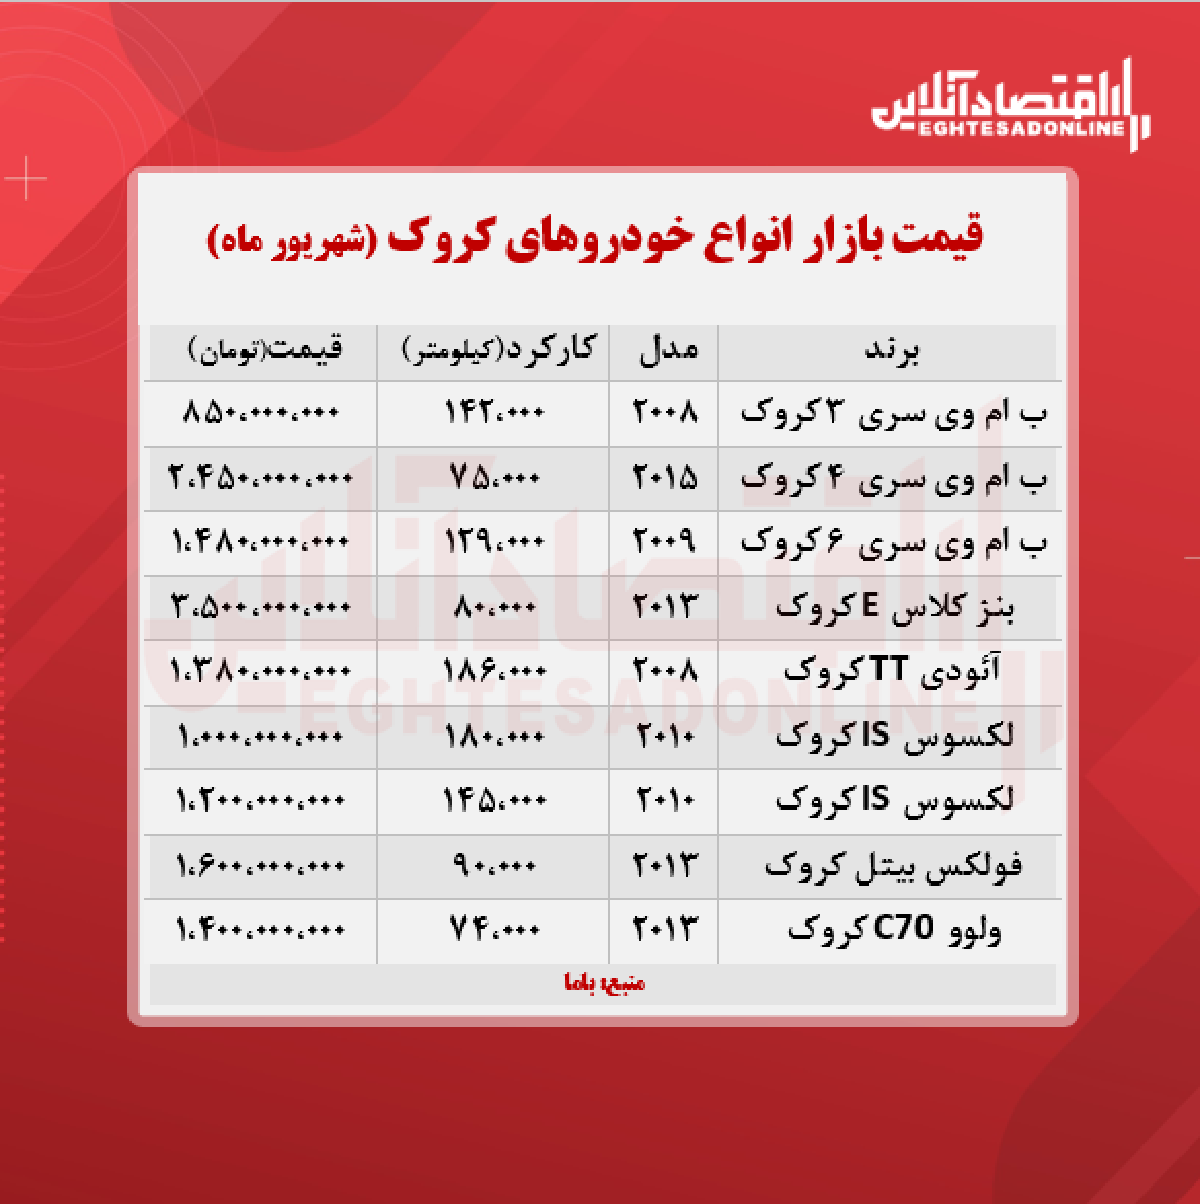 قیمت خودروهای کروک در تهران + جدول